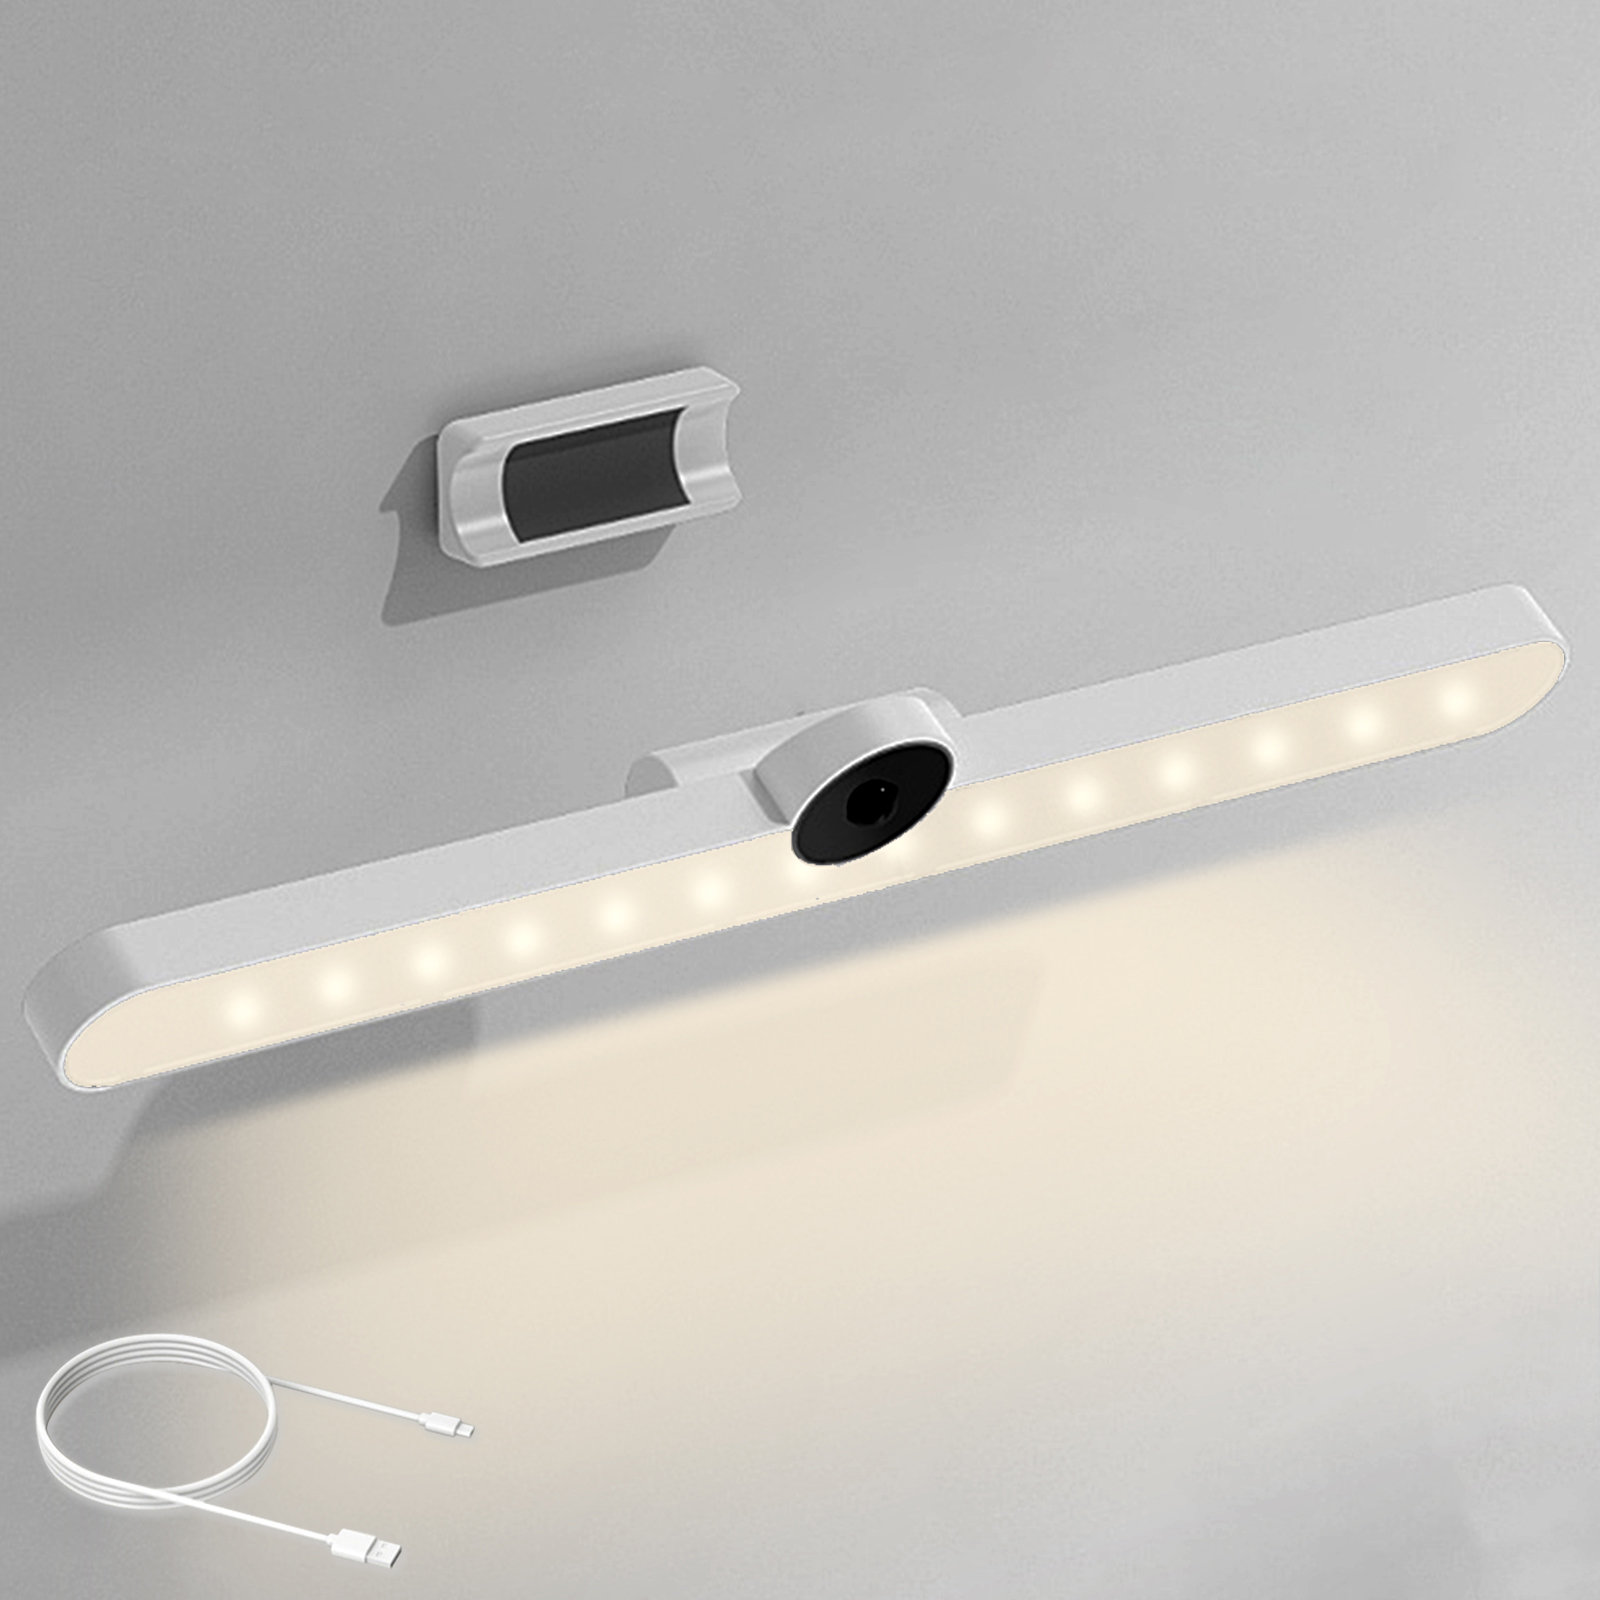 https://assets.wfcdn.com/im/05883039/compr-r85/2391/239160222/36led-wireless-motion-sensor-lights-low-voltage-magnetic-night-light-for-bedroom-kitchen-closet.jpg